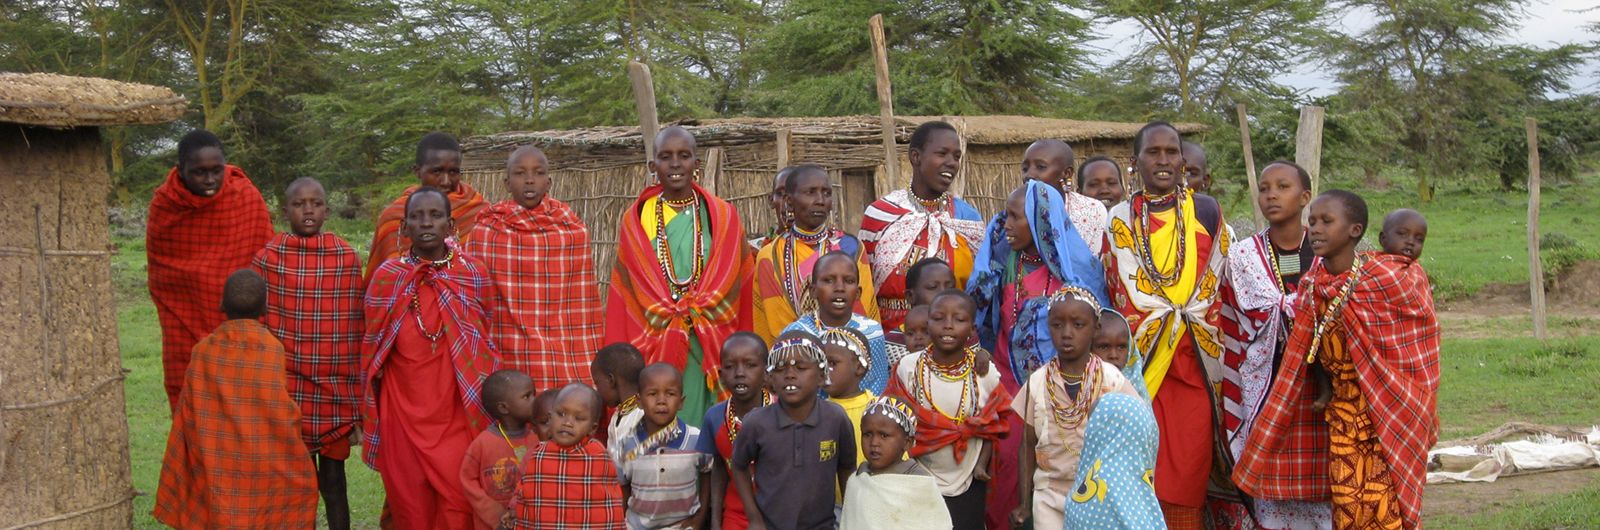 Masais en Tanzania